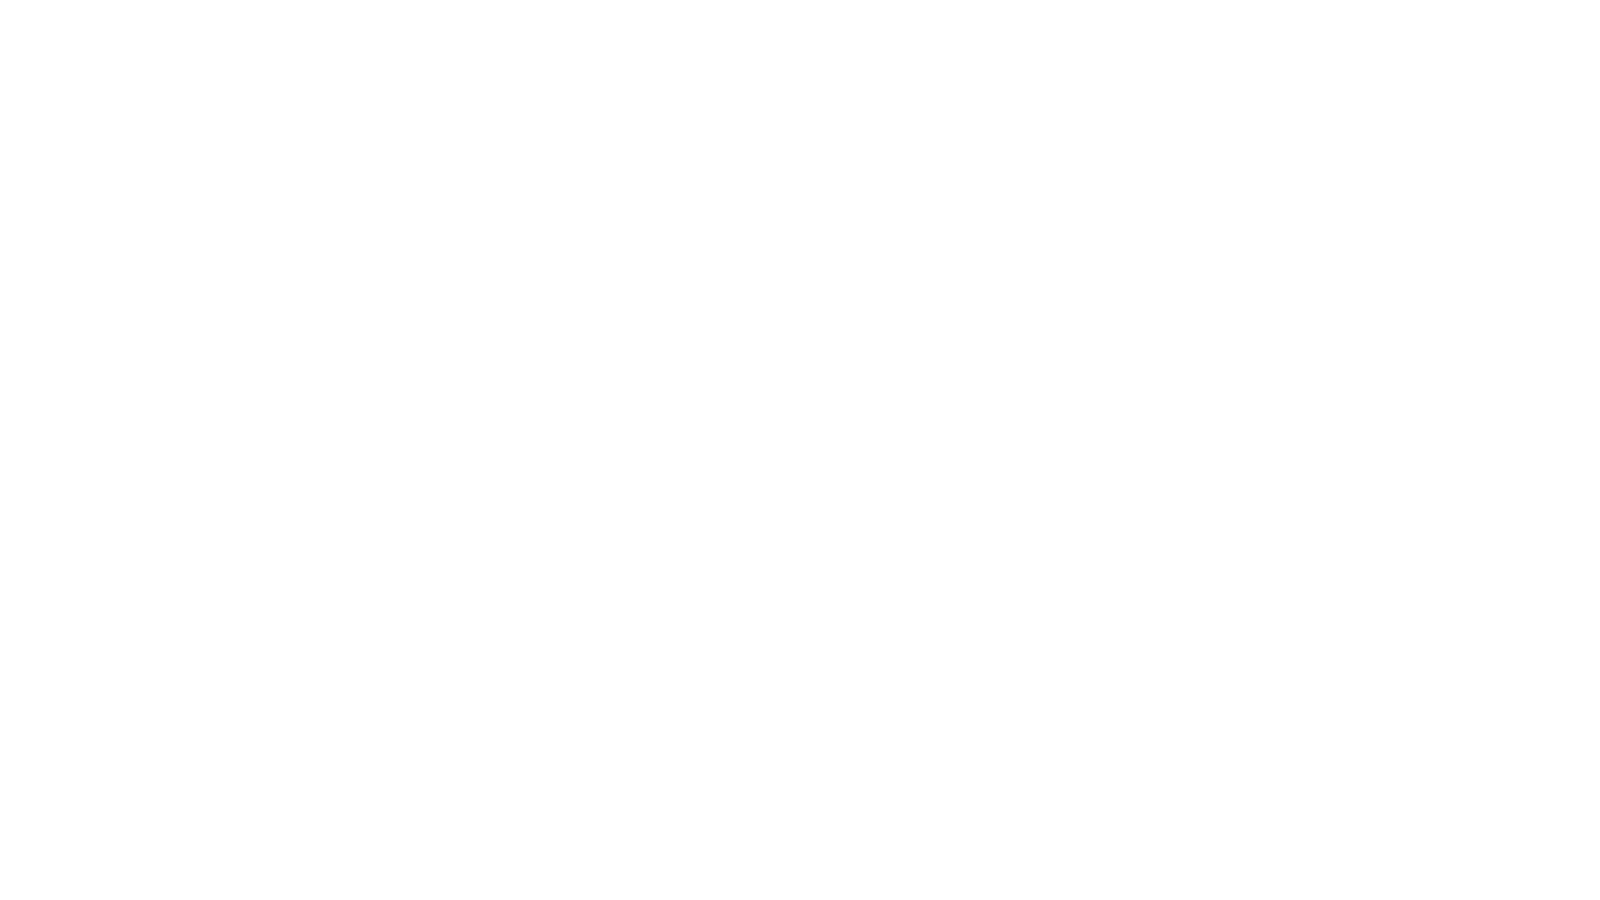 Mercoledì 22 giugno 2022 alle ore 18:00 - Conferenza 
'Lazio terra di Neanderthal: il caso studio di Grotta Guattari' 

Oggi, Mercoledì 22 giugno 2022 alle ore 18:00, si tiene il quinto incontro a cura del Prof. M.F. Rolfo dal titolo “Lazio terra di Neanderthal: il caso studio di Grotta Guattari” del ciclo di conferenze on line “Paleoantropologia e Preistoria del territorio Laziale“.

Il Prof. M.F. Rolfo (Università degli studi di Roma ‘Tor Vergata’) ci parlerà delle ricerche sull’uomo di Neanderthal nel Lazio dalle recenti nuove datazioni dei crani di Saccopastore, allo studio delle industrie litiche nella Pianura Pontina fino ad arrivare alla storia delle ricerche nel promontorio del Circeo e gli ottant’anni di ricerche effettuate presso il sito di Grotta Guattari, che fino ad oggi ha riservato notevoli rinvenimenti di importanza internazionale: Lazio terra di Neanderthal.

📆 Le conferenze si terranno tutti i mercoledì dal 25 maggio al 6 luglio 2022 alle ore 18:00 e saranno trasmesse sulla #PAGINA #FACEBOOK di #AssociazioneLatiumVetus APS e sul sito internet dell'associazione (durante la LIVE è possibile scrivere le proprie domande al professore).

#Preistoria #EvoluzioneUmana #paleoantropogia #storia #natura #selezionedellaspecie #Umanità #conferenze #università #Roma #Polledrara